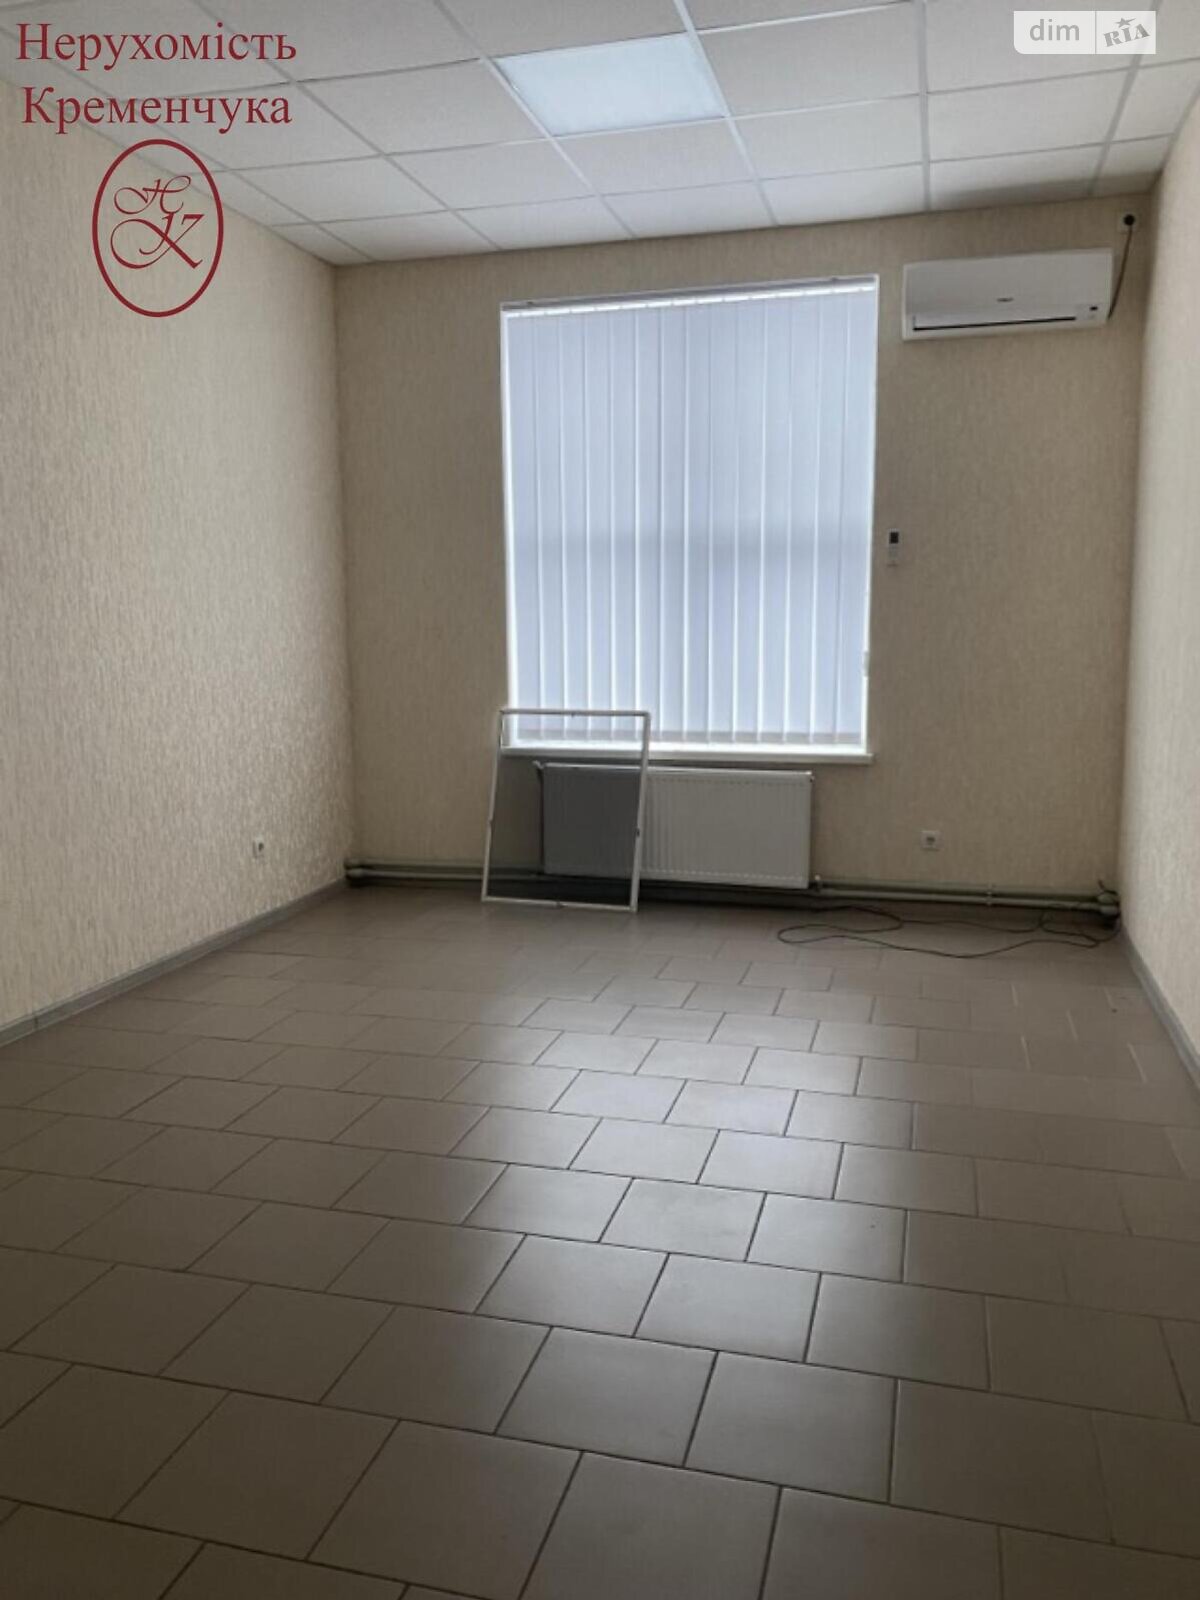 Аренда офисного помещения в Кременчуге, Велика Набережна, помещений - 1, этаж - 1 фото 1